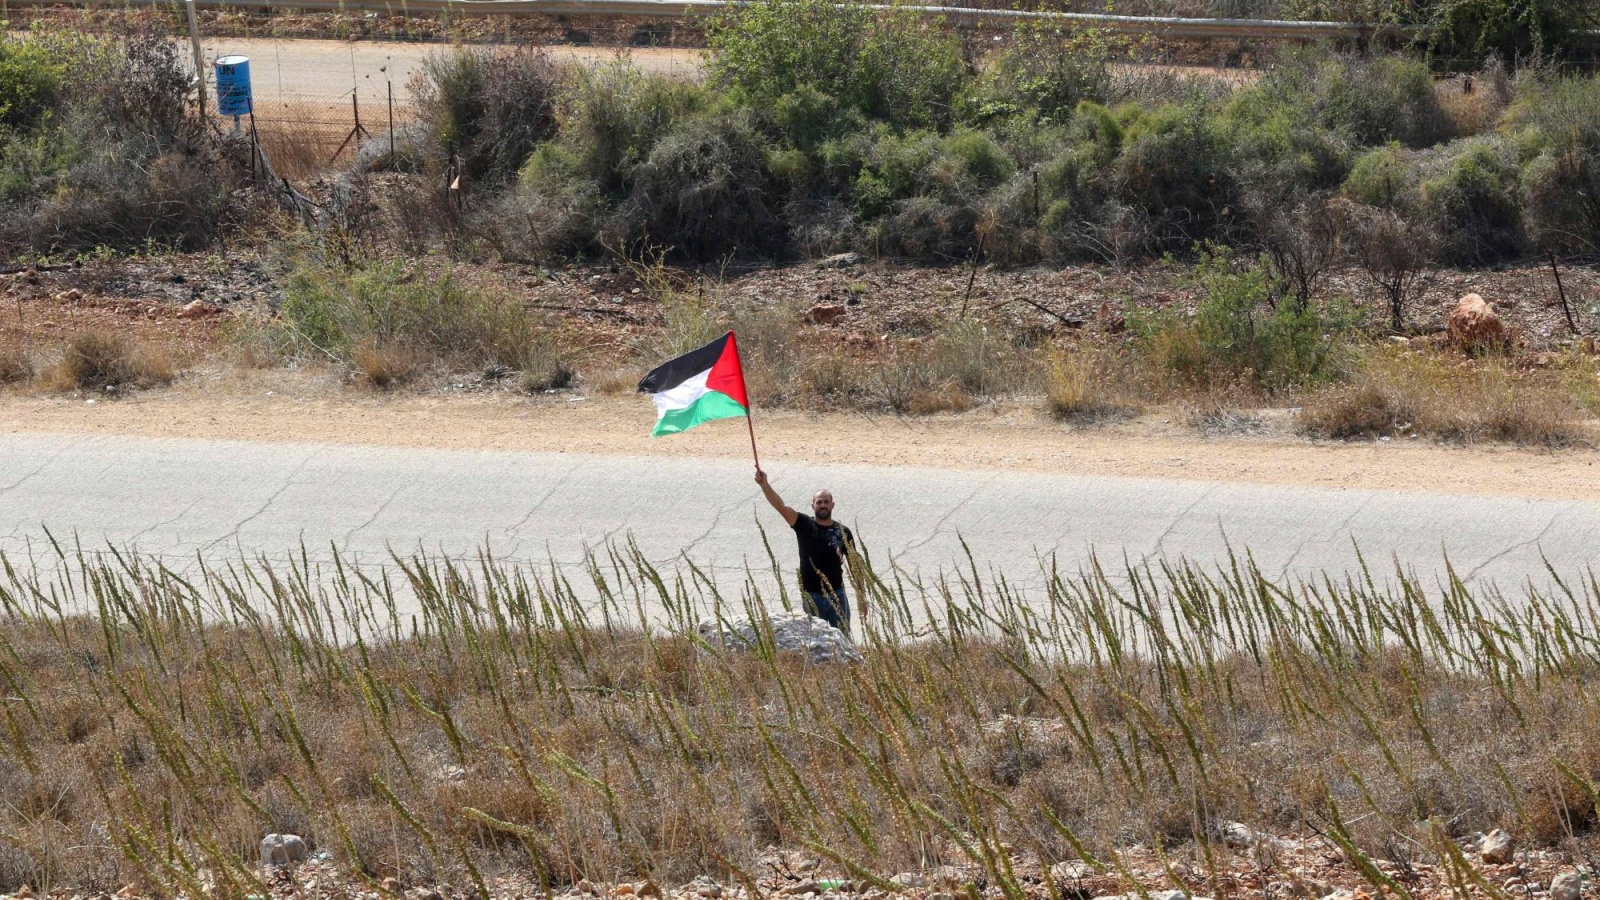 لبناني يلوح بعلم فلسطين في سهل الخيام قرب حدود إسرائيل